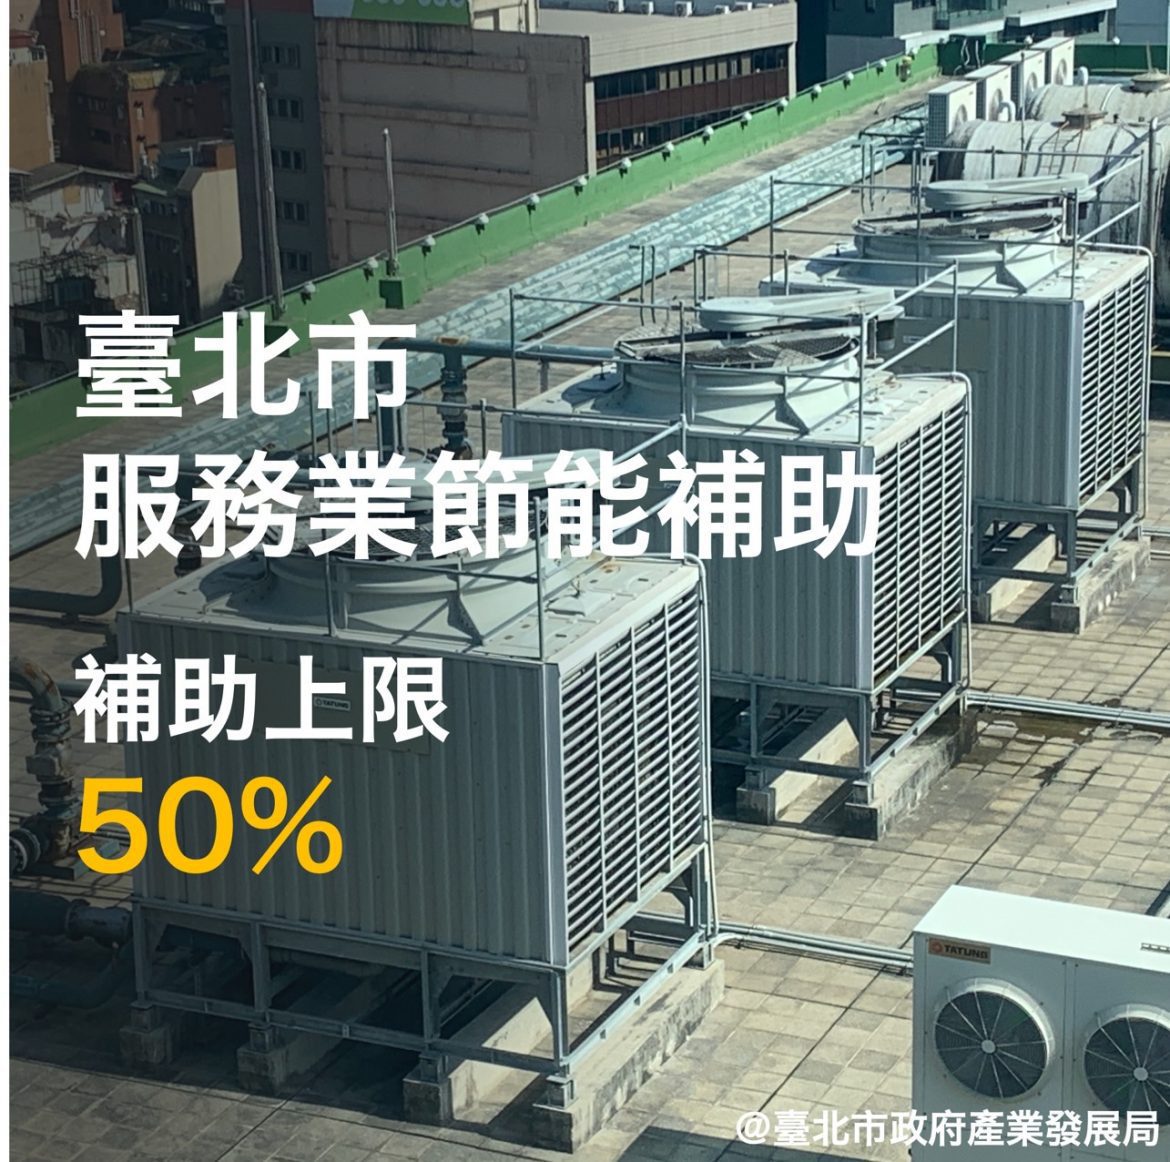 產業和居民電價將上漲：臺北市政府提供節能補助以緩解影響